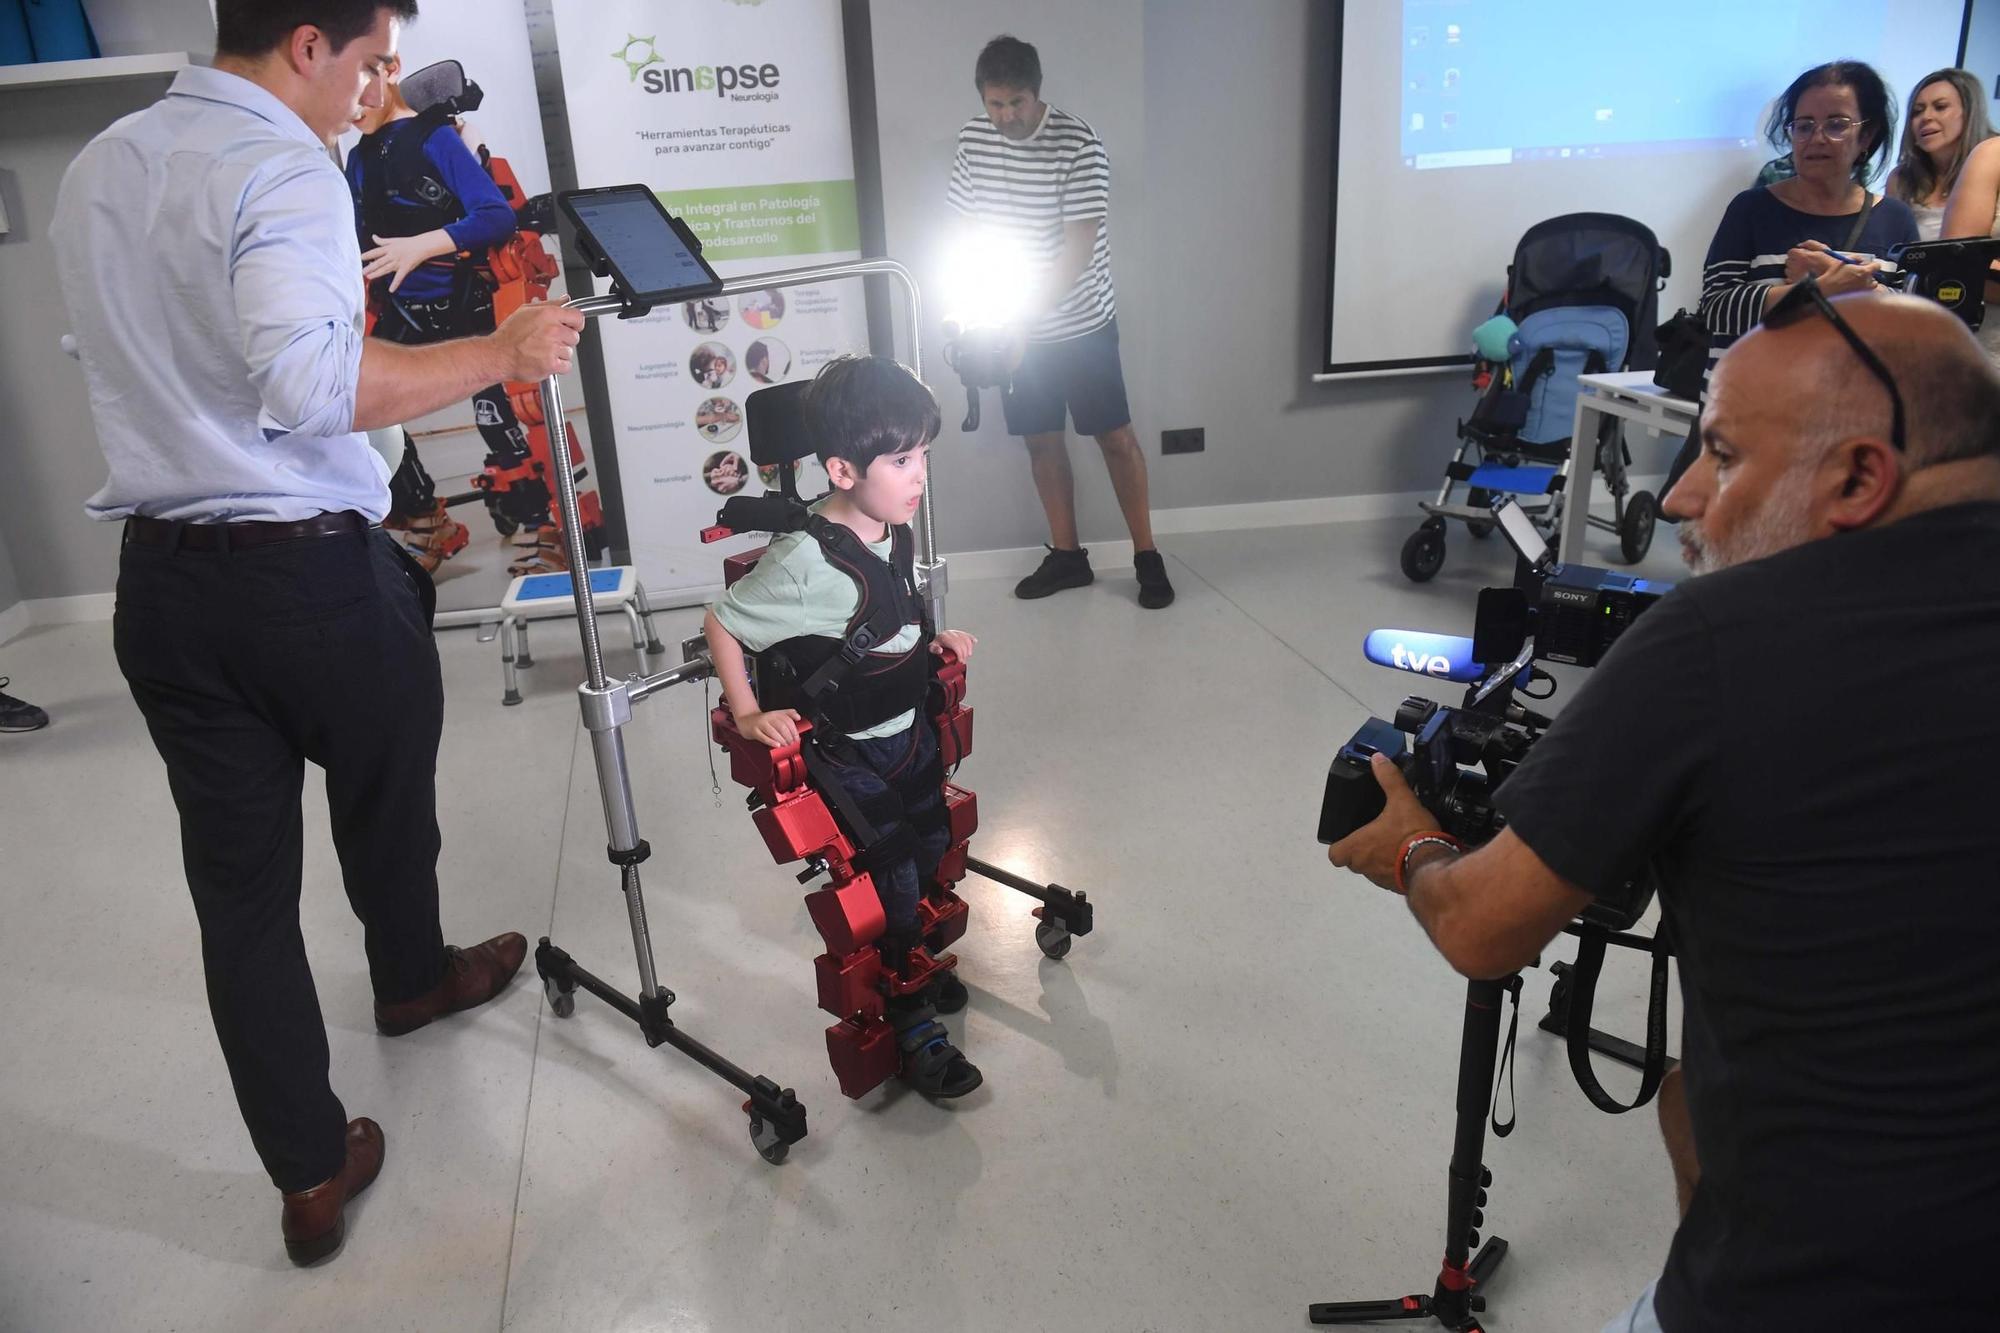 Darío y Tiago prueban en A Coruña el primer exoesqueleto para niños